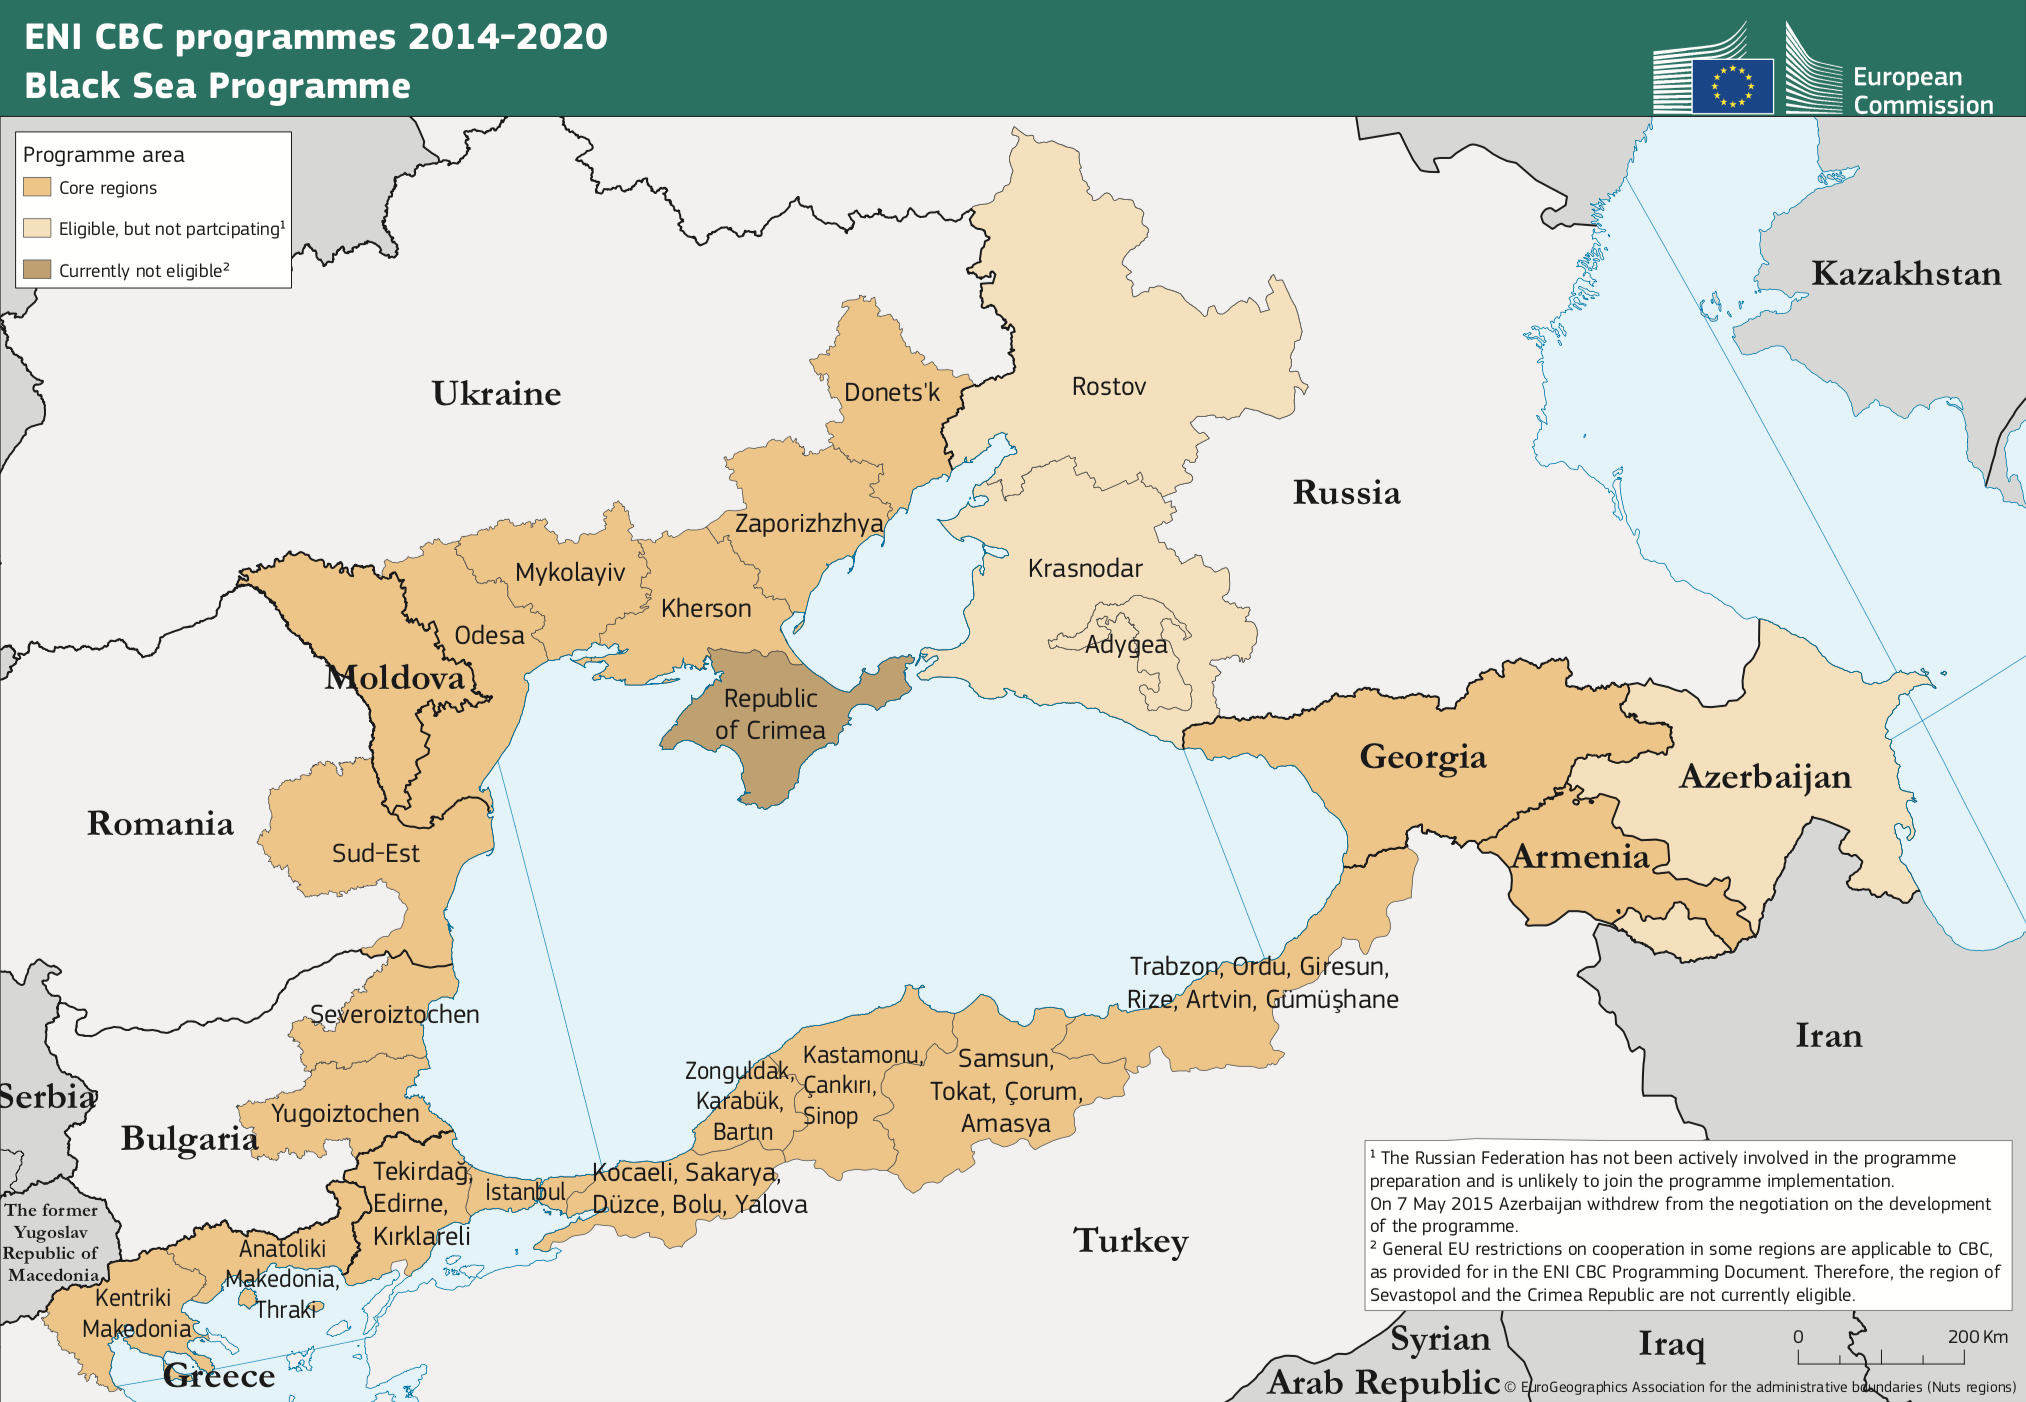 Black Sea ENI CBC Programme 2014-2020